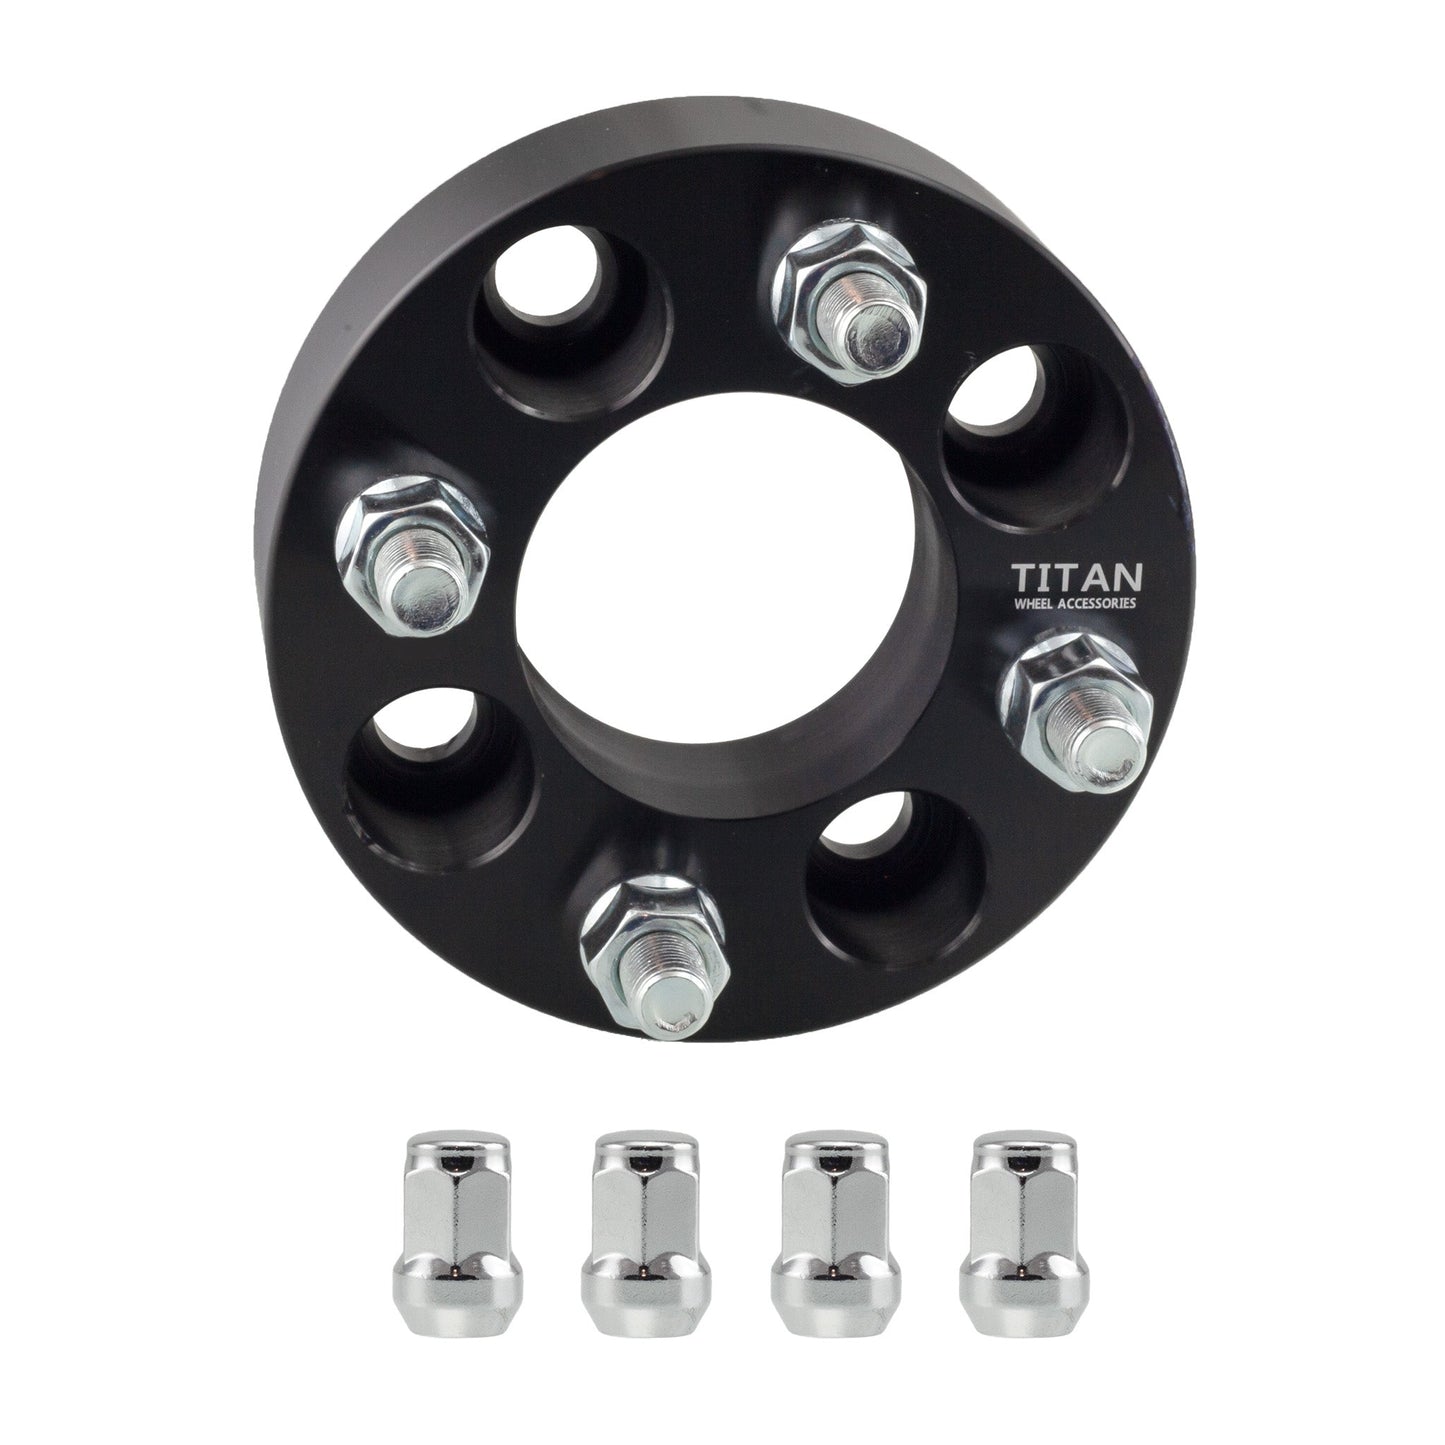 1" (25mm) Titan 4x4.5 (4x114.3) To 4x4.25 (4x108) Wheel Adapters  | 12x1.5 Studs | Titan Wheel Accessories